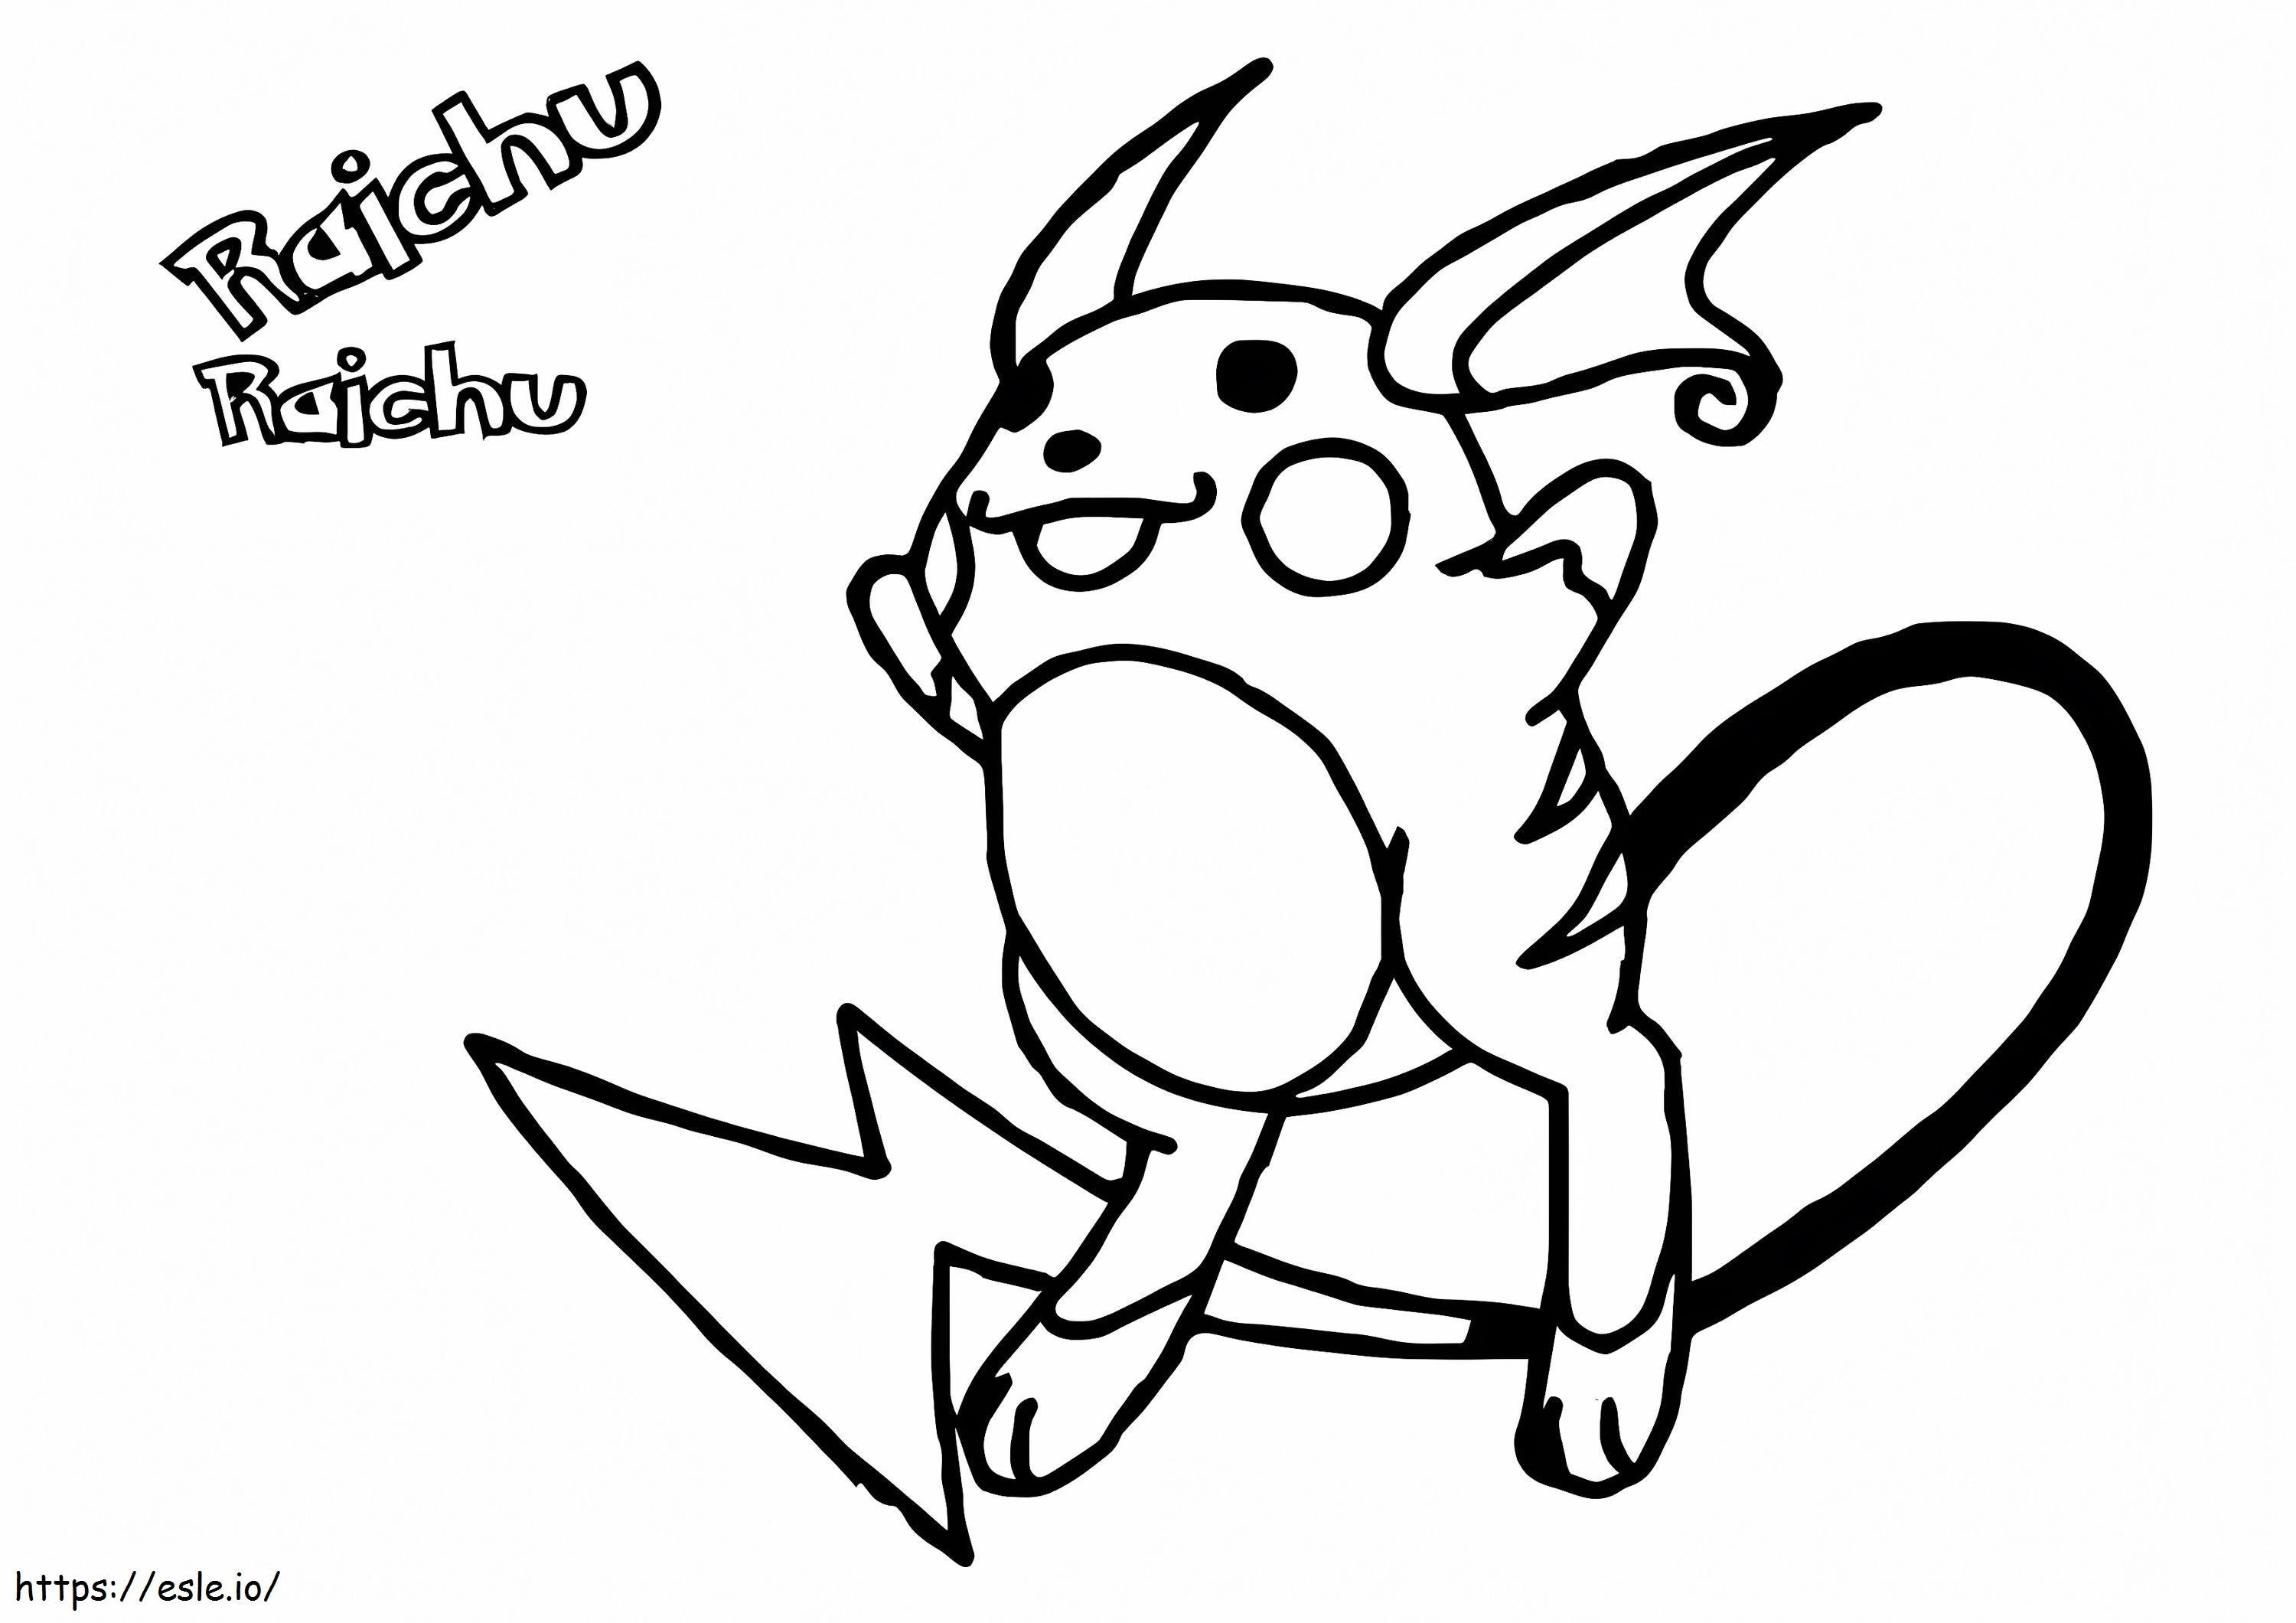 Raichu The Pokemon coloring page